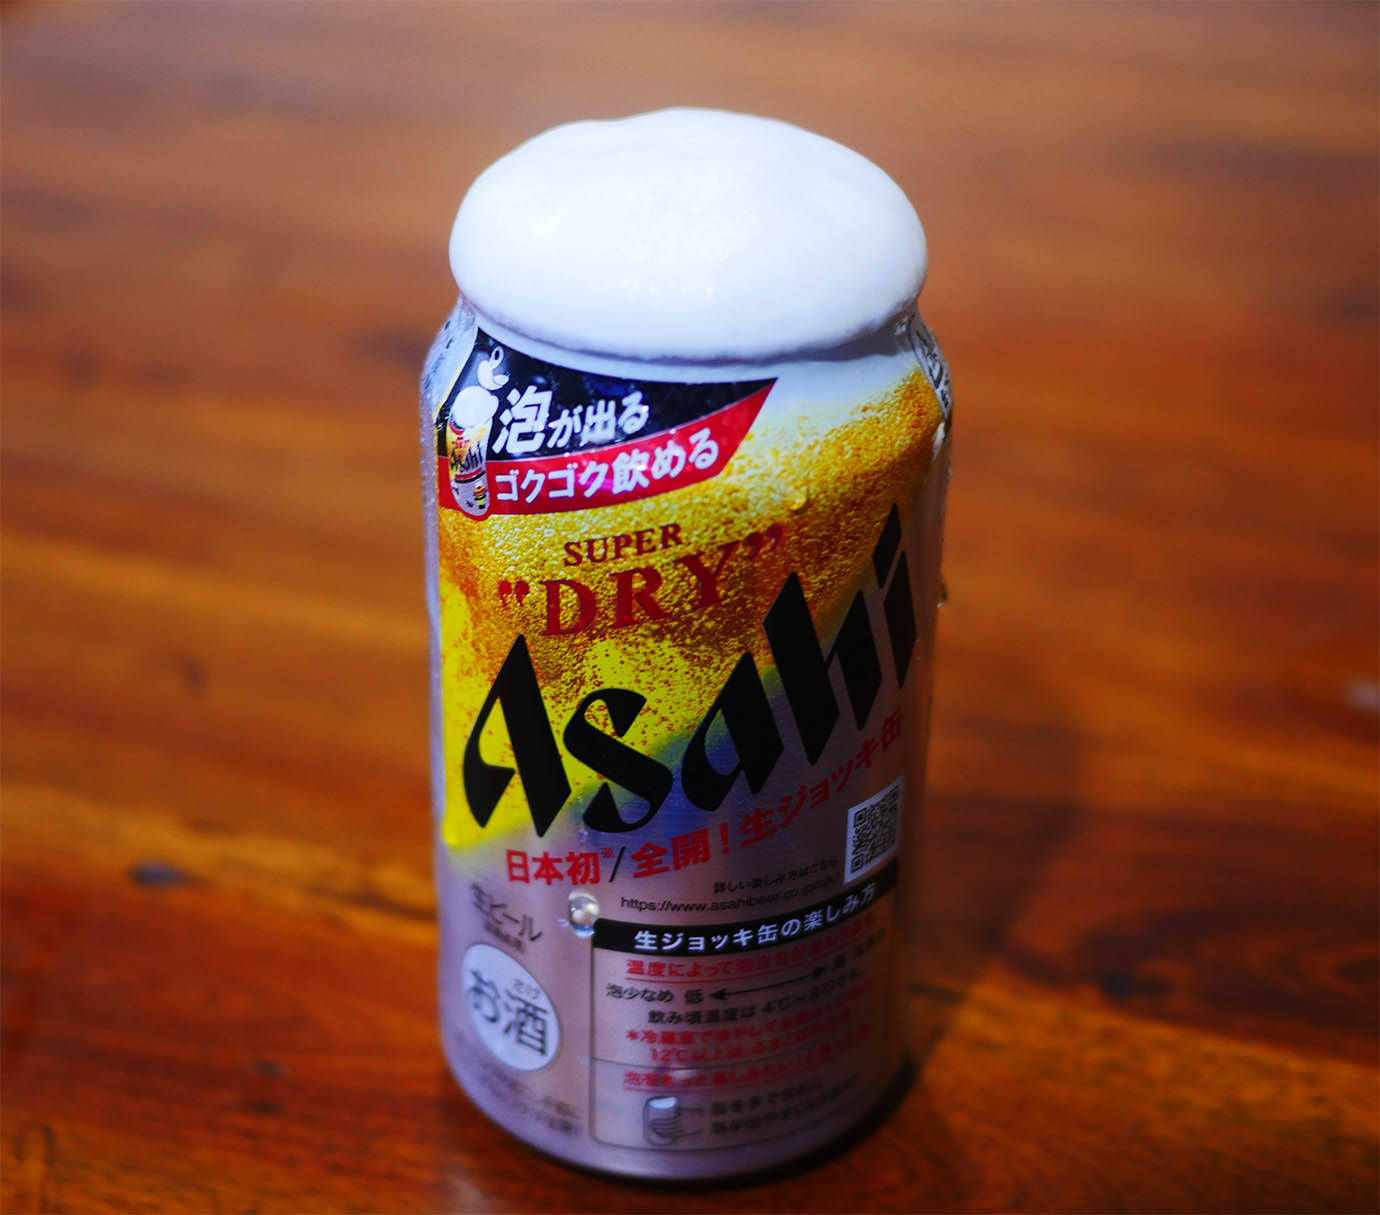 【超進化グルメ】アサヒスーパードライの生ジョッキ缶をスローモーション撮影 / どんな泡が出るのか検証と注意点